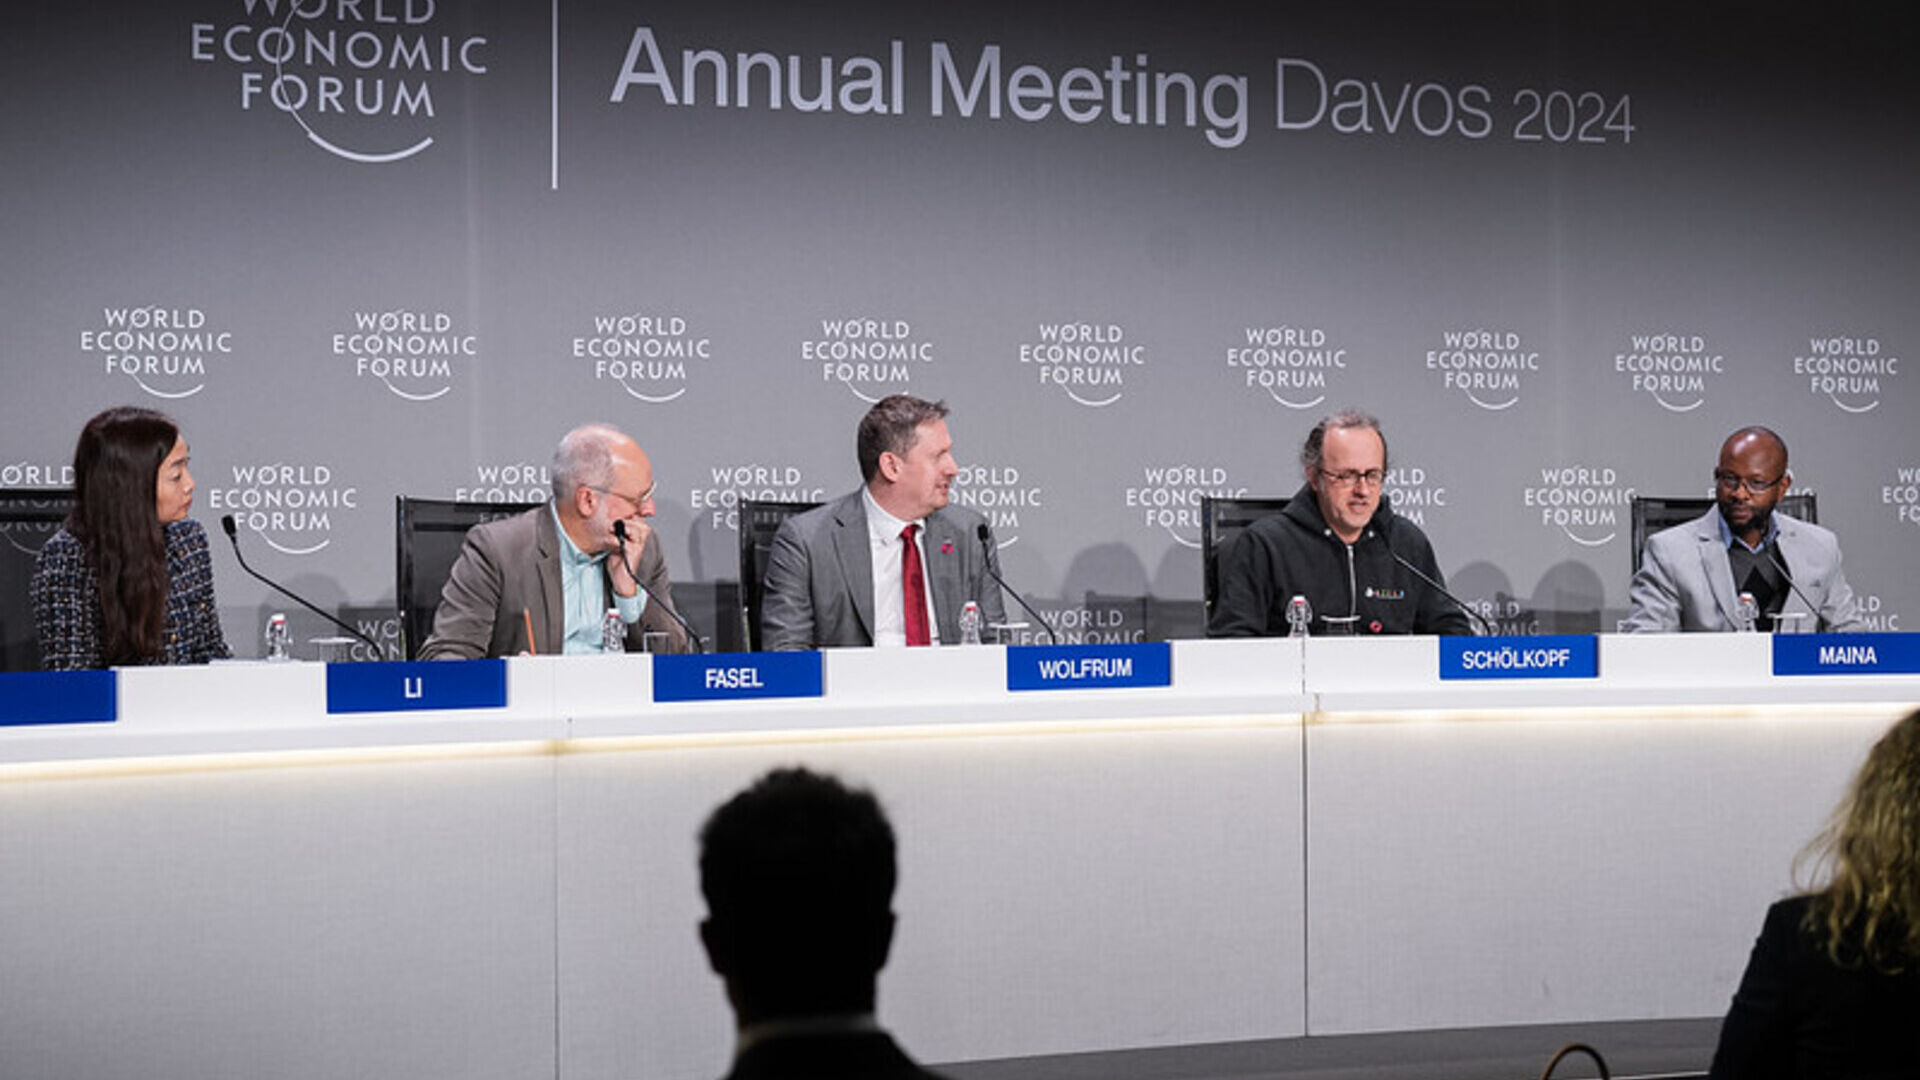 Rrjeti Ndërkombëtar i Llogaritjes dhe AI: Konferenca për shtyp e prezantimit të ICAIN gjatë edicionit 2024 të Forumit Ekonomik Botëror në Davos (Kantoni i Grisons)